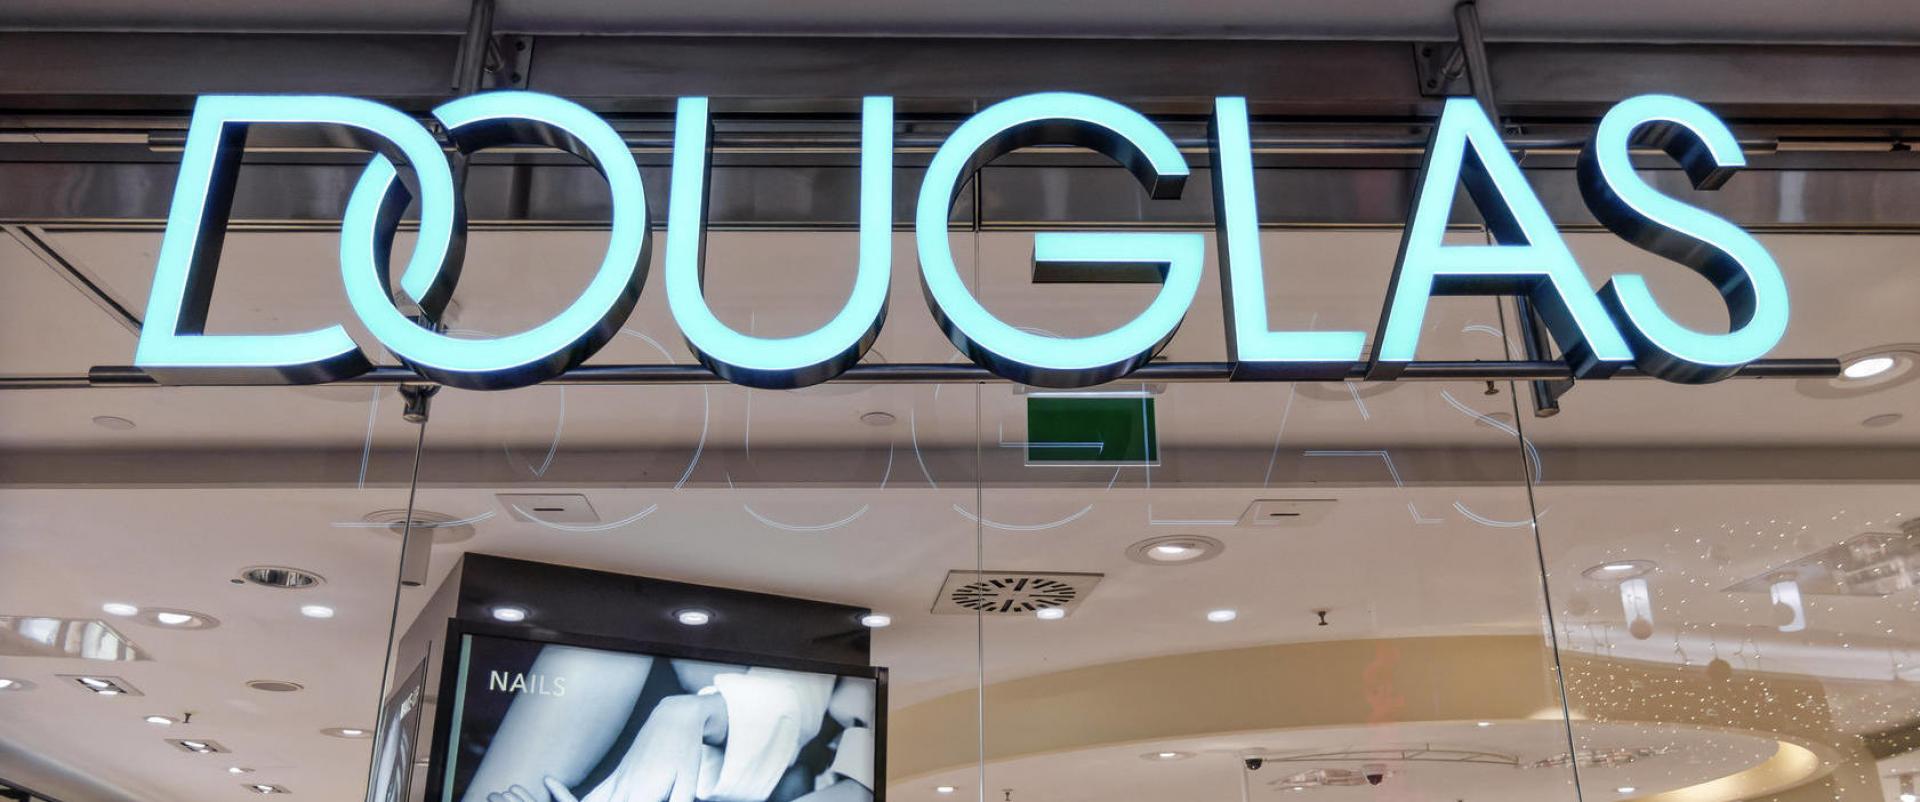 Douglas zamknie w Europie 500 sklepów - internet priorytetem rozwoju